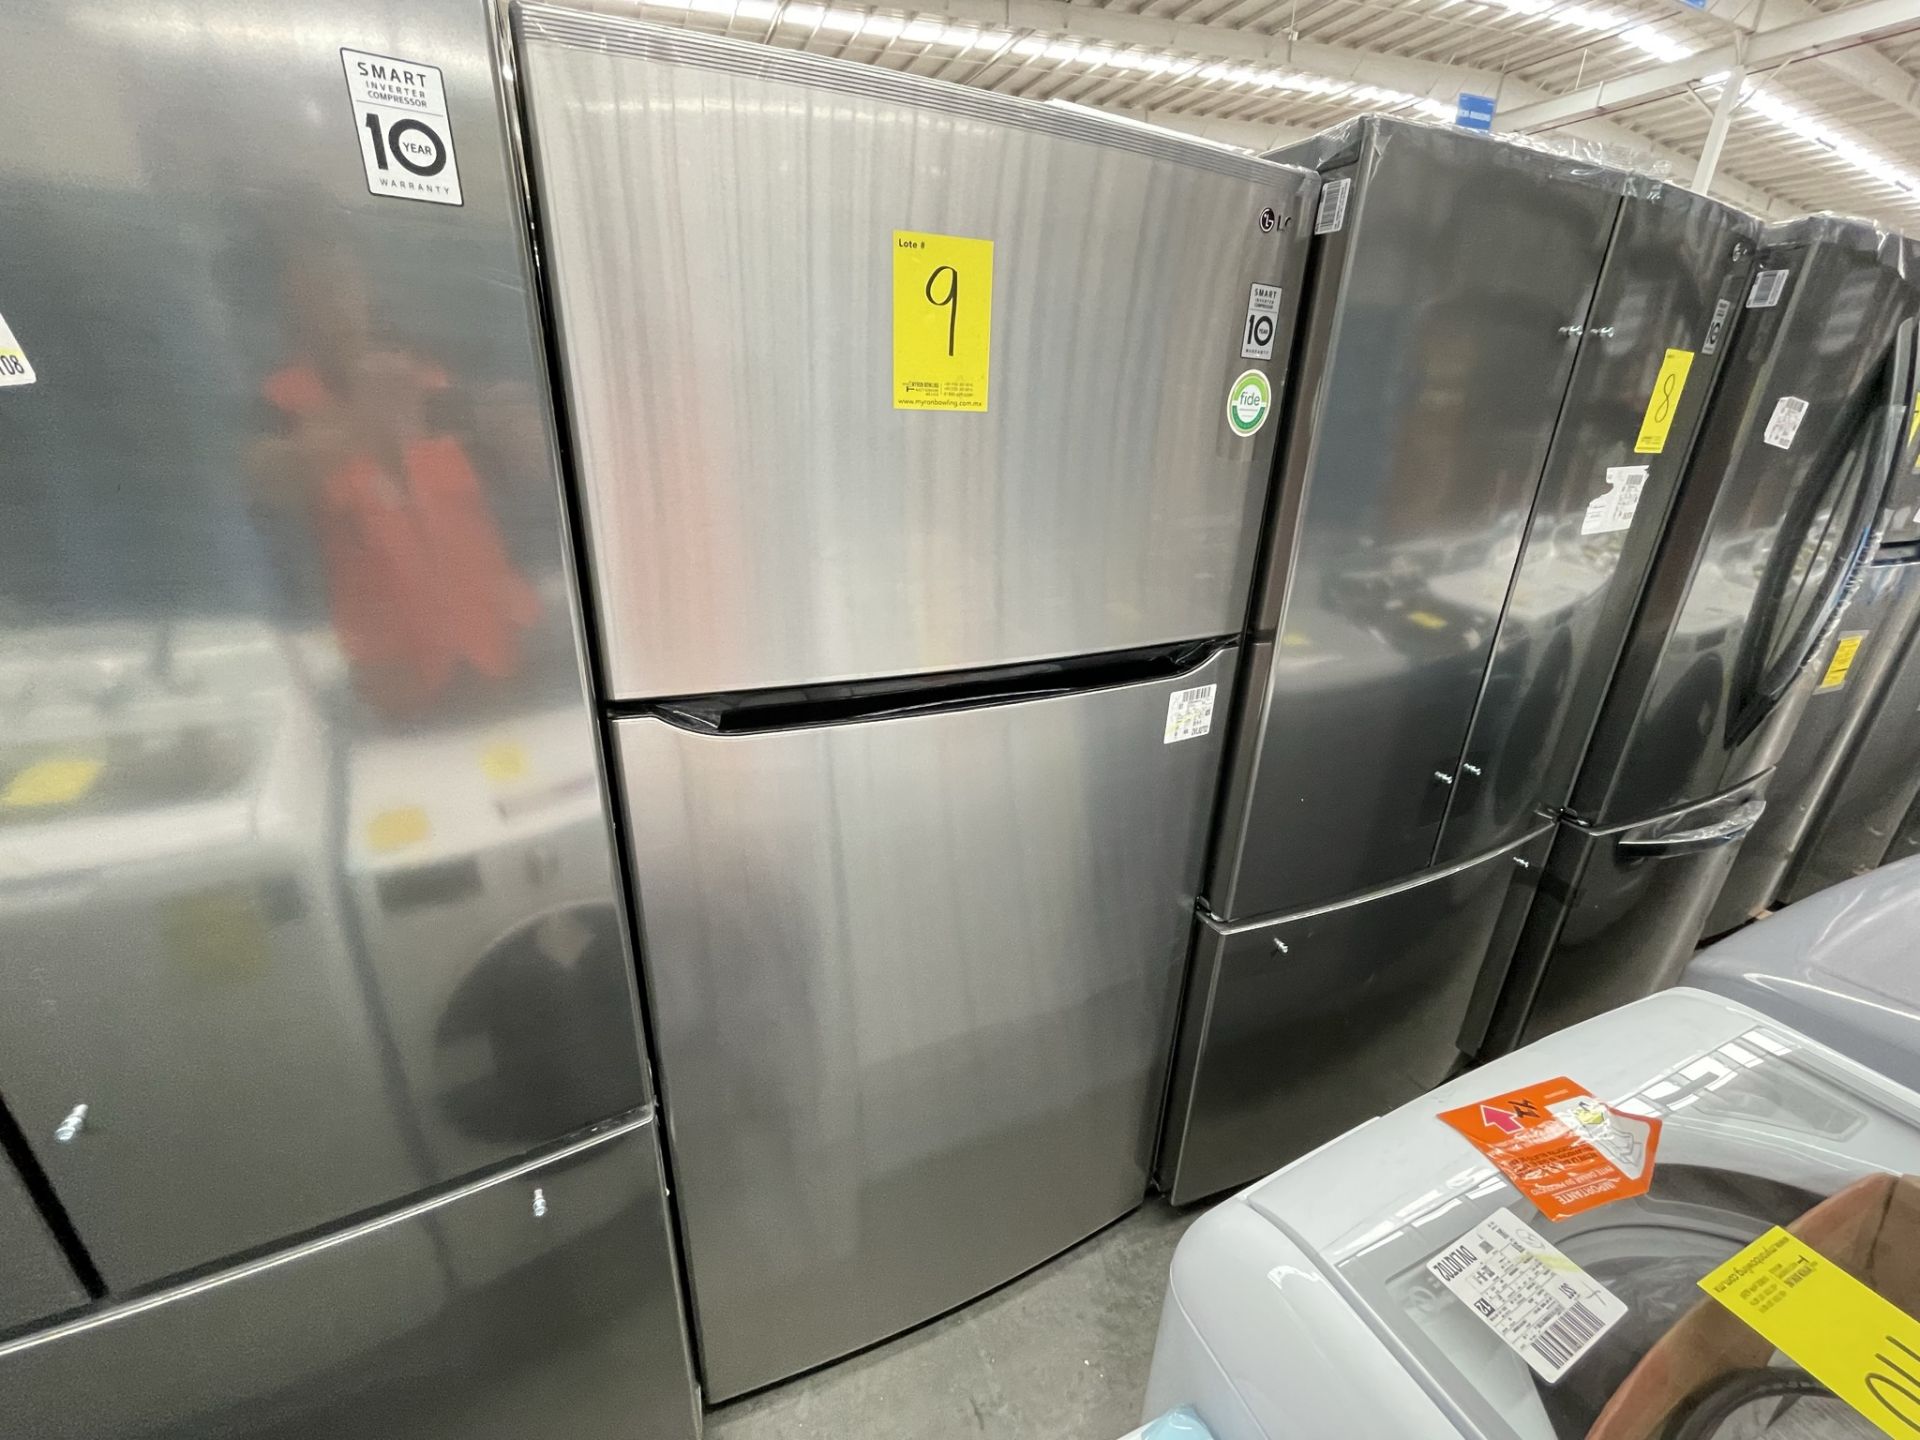 (EQUIPO NUEVO) 1 Refrigerador Marca LG, Modelo GT24BS, Serie V1C601, Color GRIS, LB-619781; (Nuevo, - Image 4 of 10